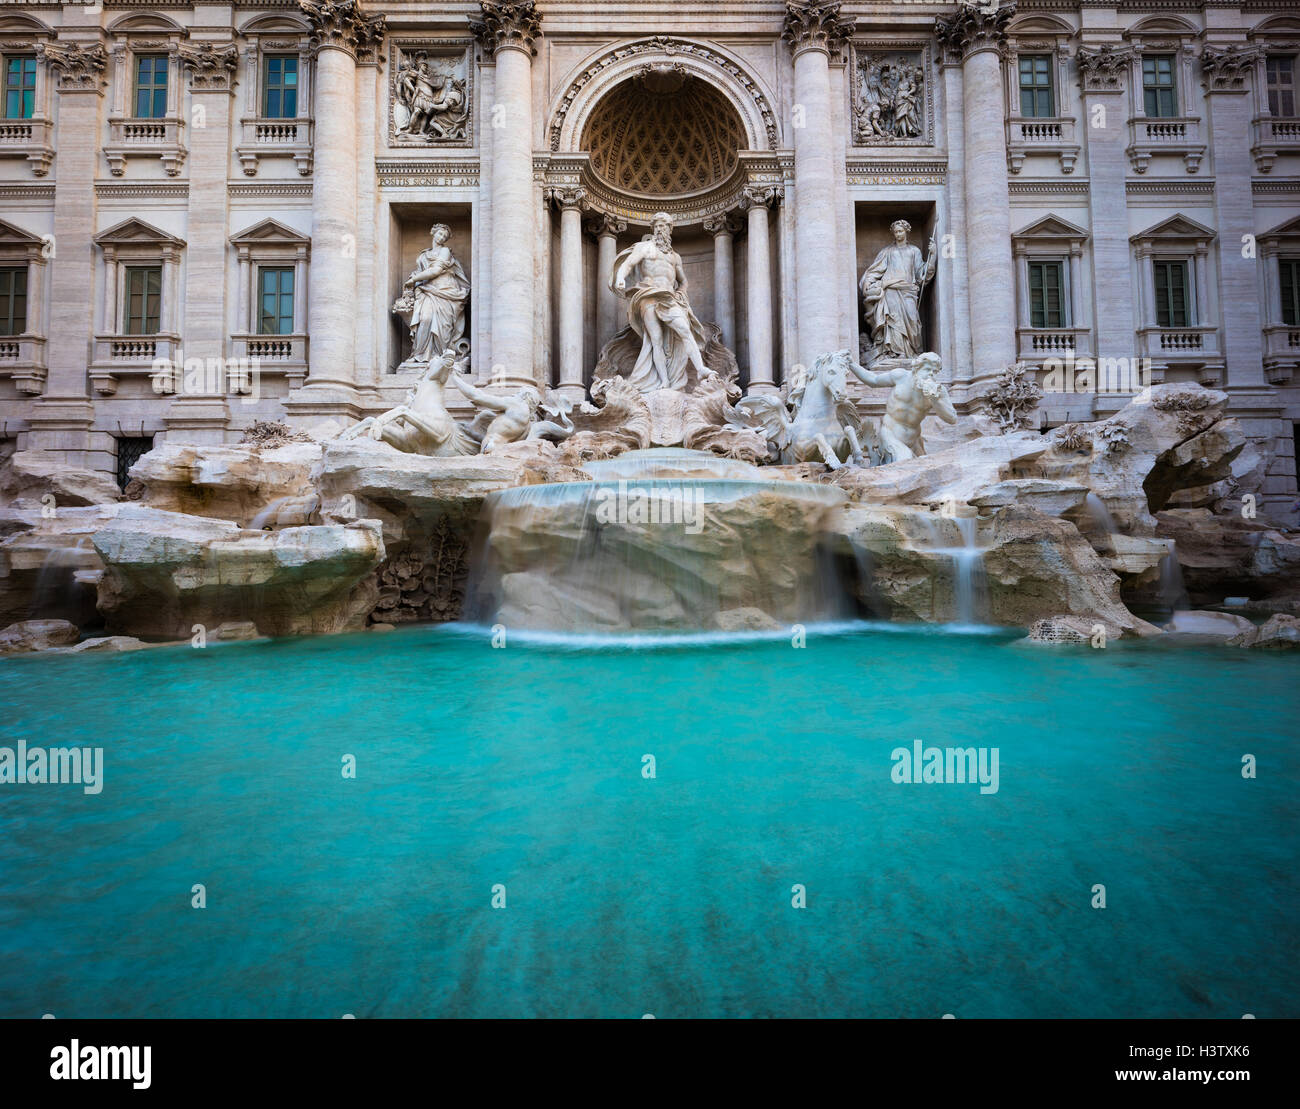 Fontaine de Trevi (Italien : Fontana di Trevi) est une fontaine dans le quartier de Trevi à Rome, Italie Banque D'Images